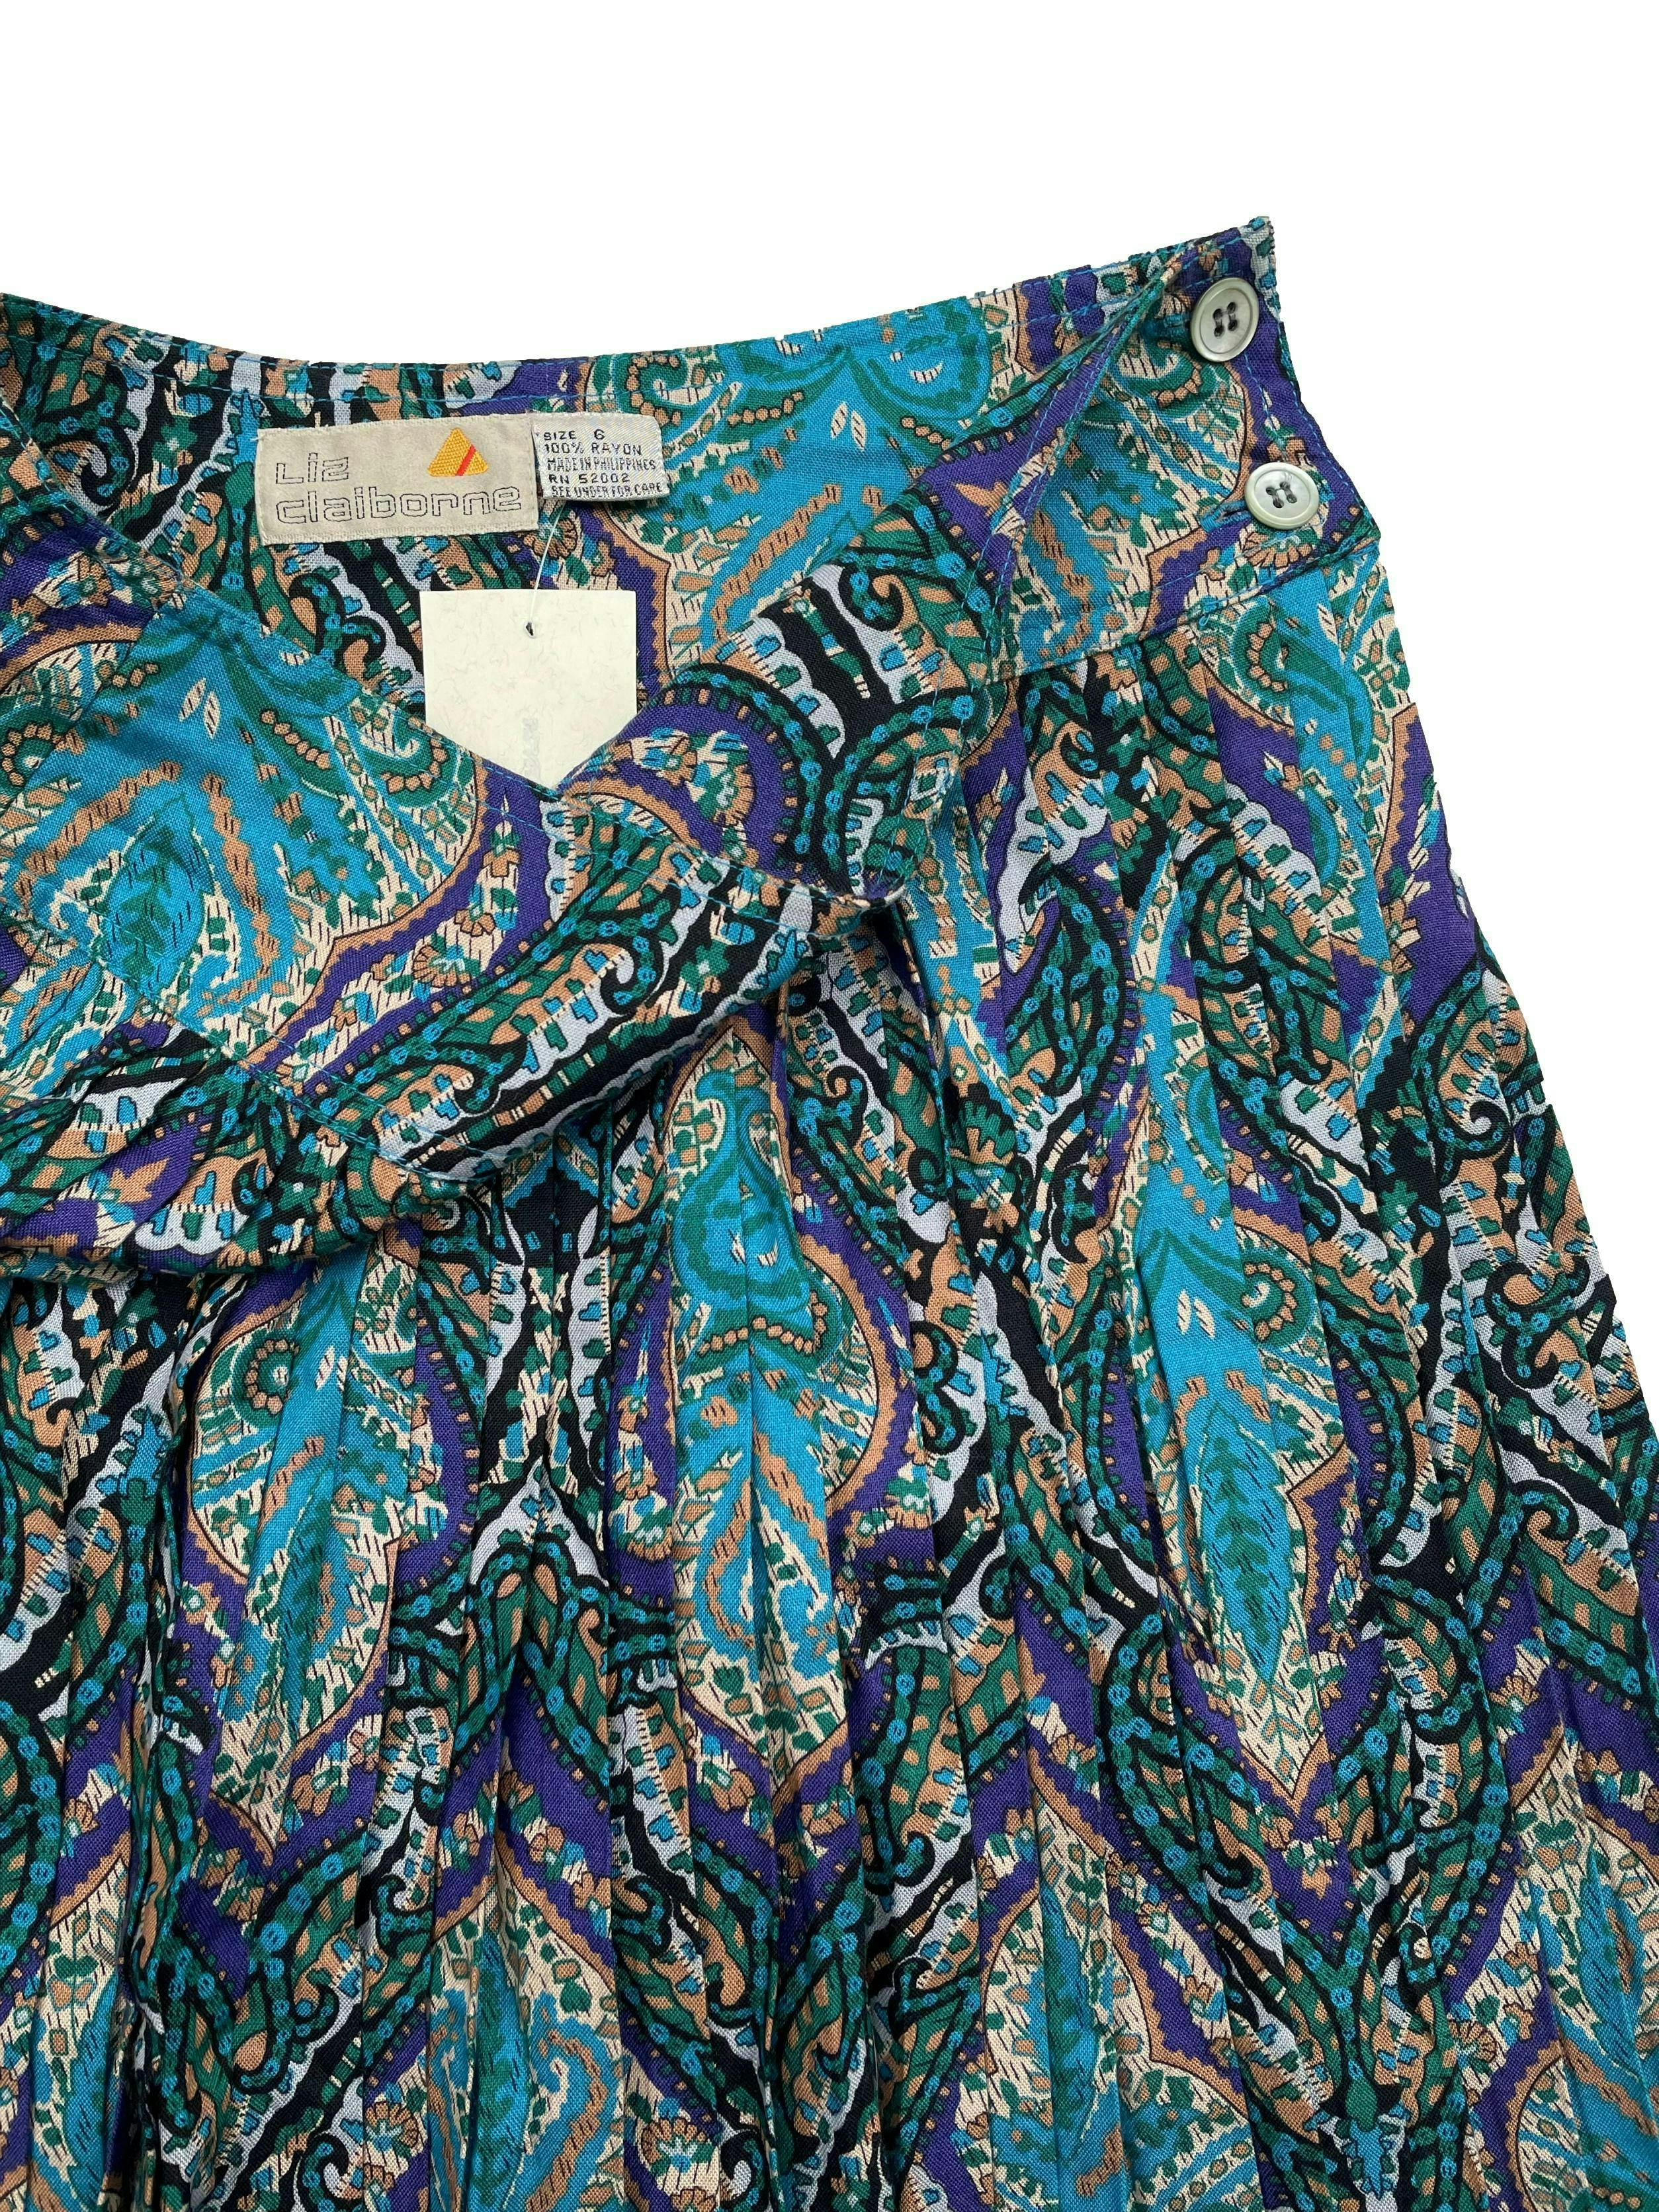 Falda vintage plisada con estampado paisley en tonos verdes y morados, botón y cierre en espalda. Cintura 66cm, Largo 62cm.